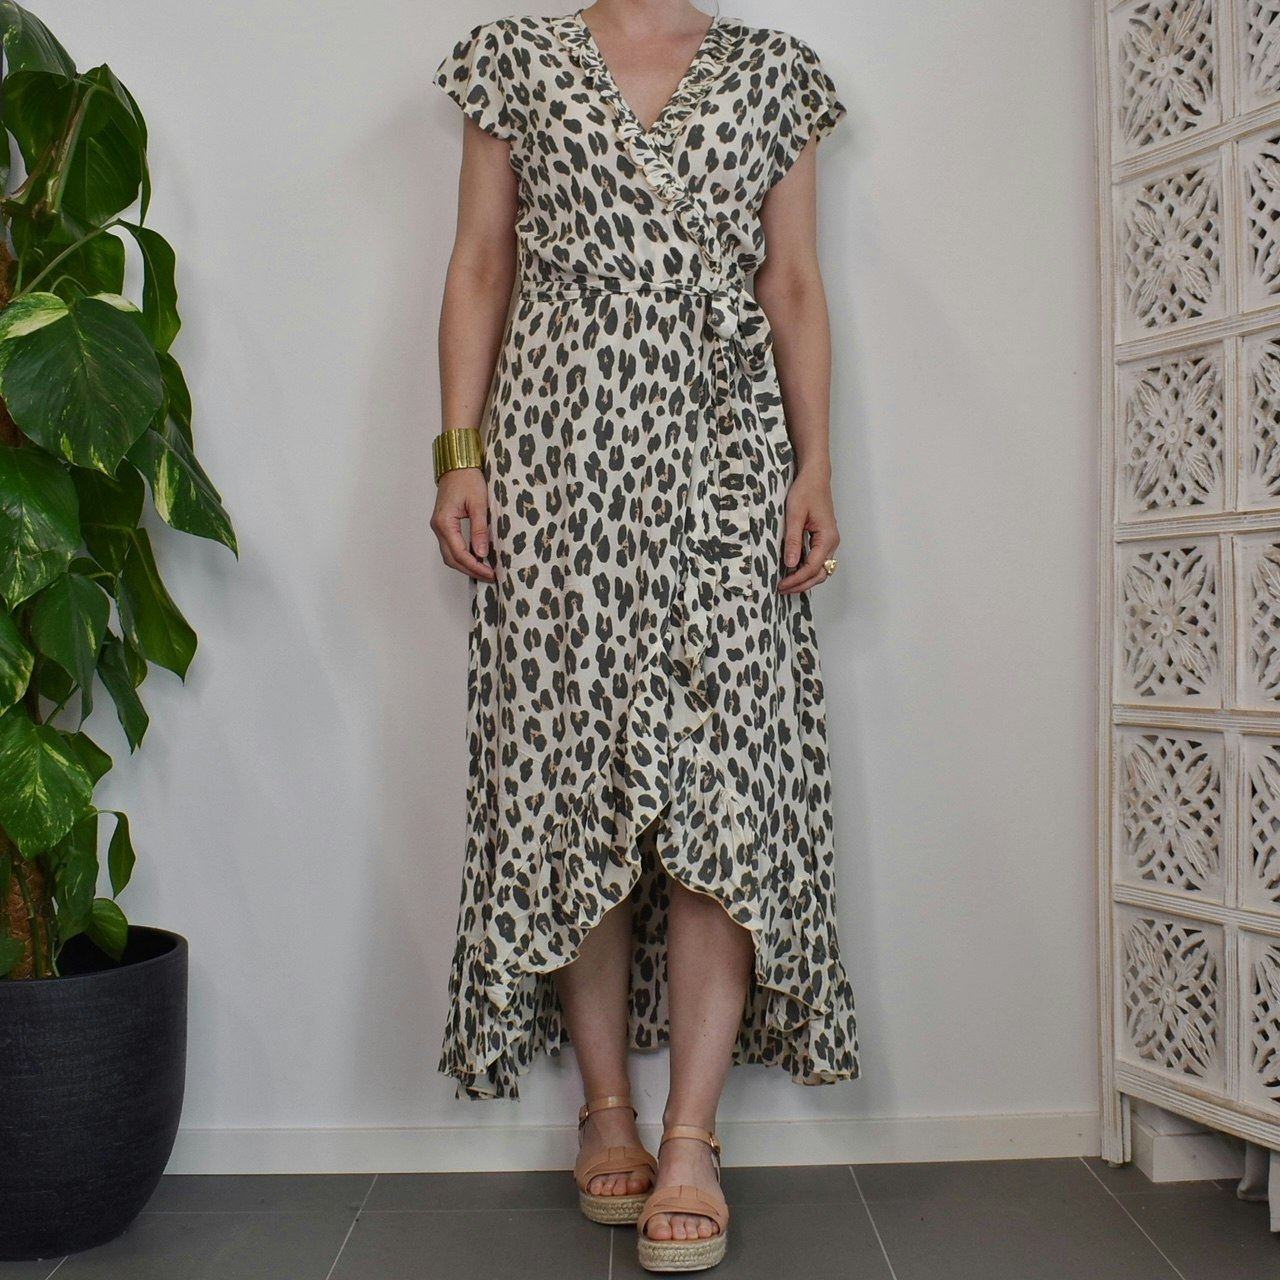 Omlottklänning Leopard CREAM- CoconutMilk by Stajl - En Slags Verklighet